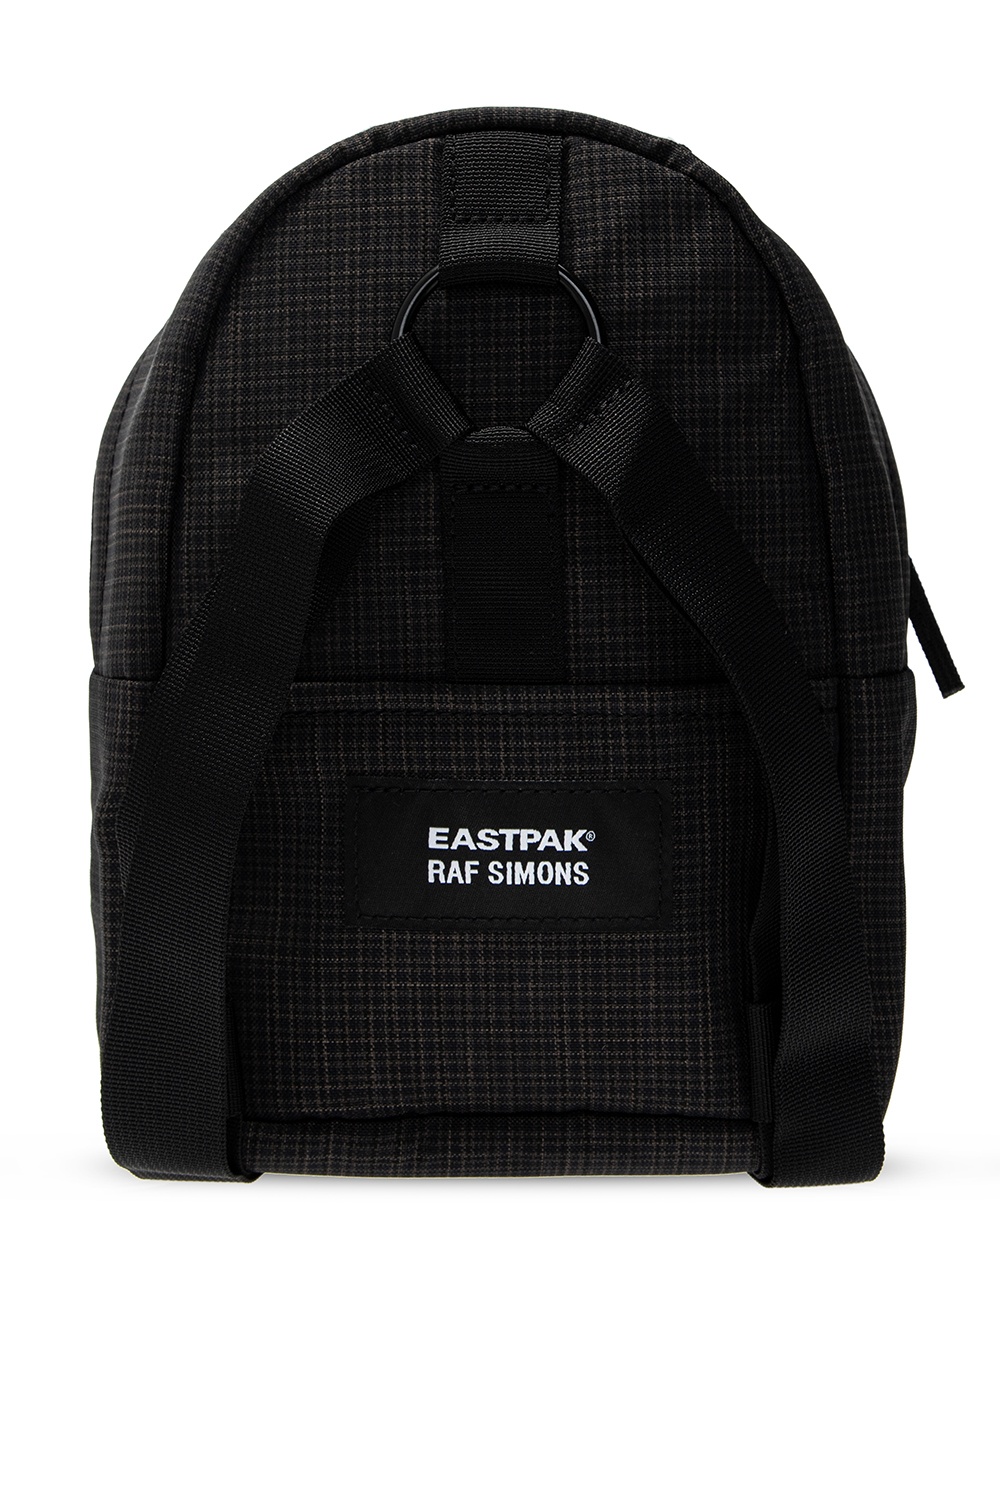 Raf Simons Black Eastpak Edition Check Padded Pakr Backpack Raf Simons